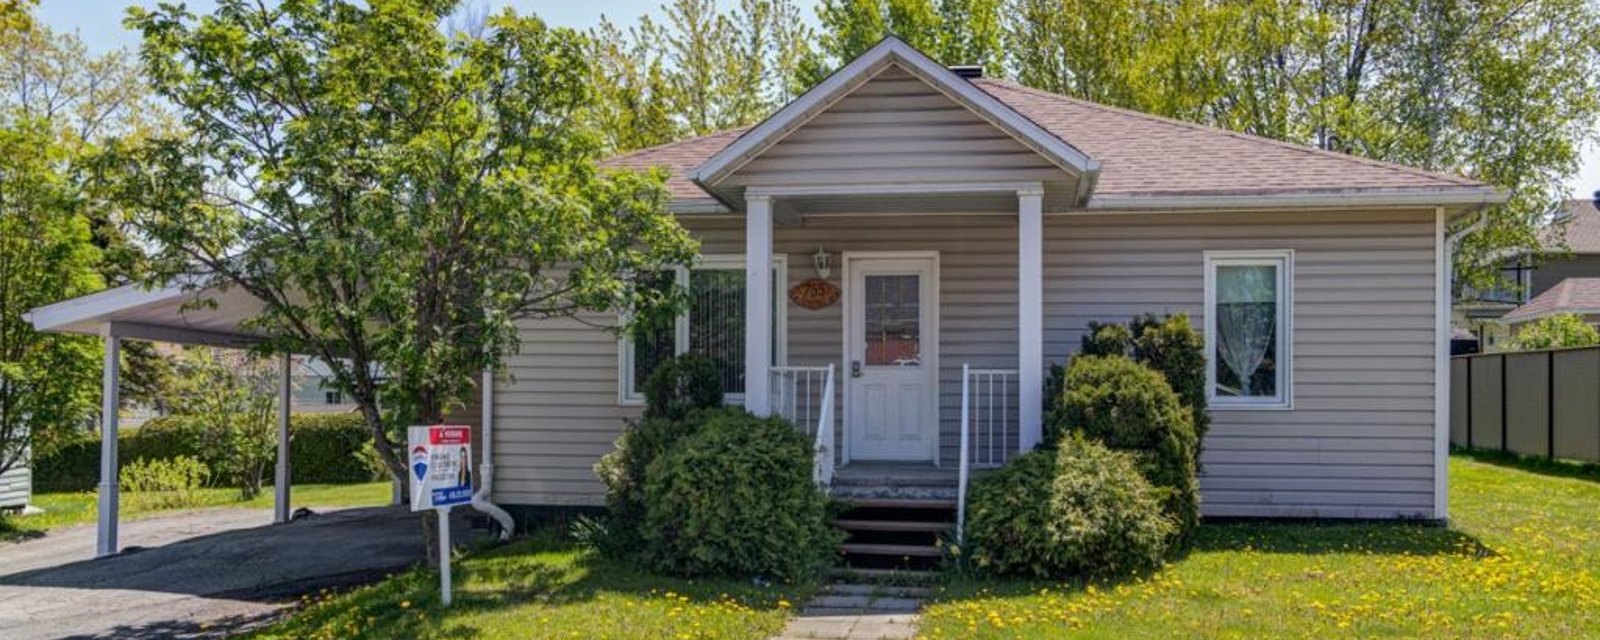 Coquet petit cottage à 168 900$ libre immédiatement et idéal comme 1ère acquisition